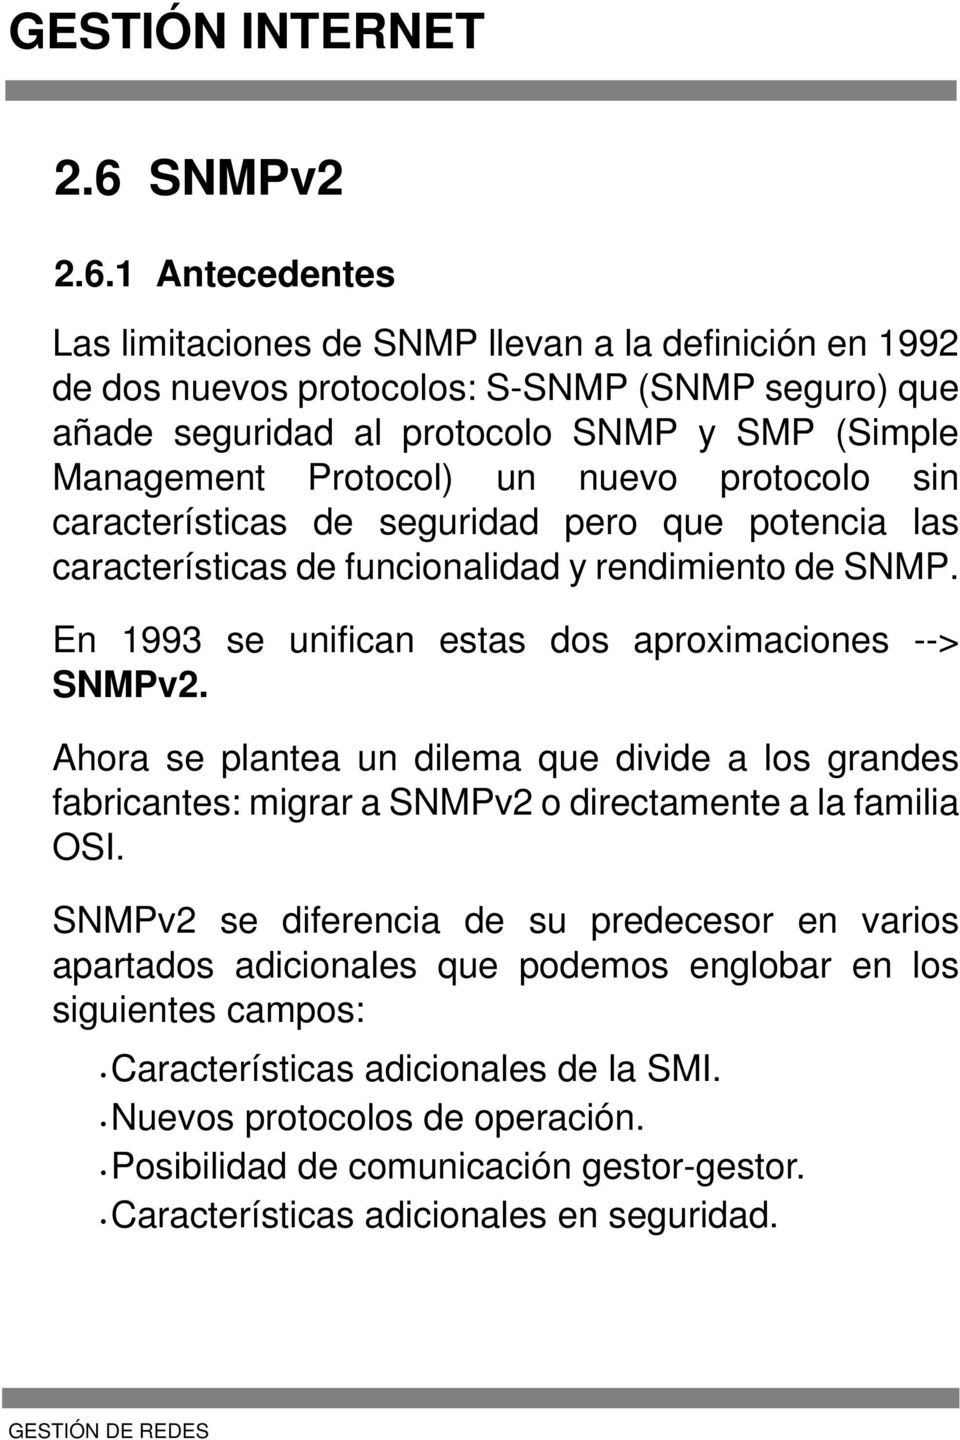 1 Antecedentes Las limitaciones de SNMP llevan a la definición en 1992 de dos nuevos protocolos: S-SNMP (SNMP seguro) que añade seguridad al protocolo SNMP y SMP (Simple Management Protocol) un nuevo